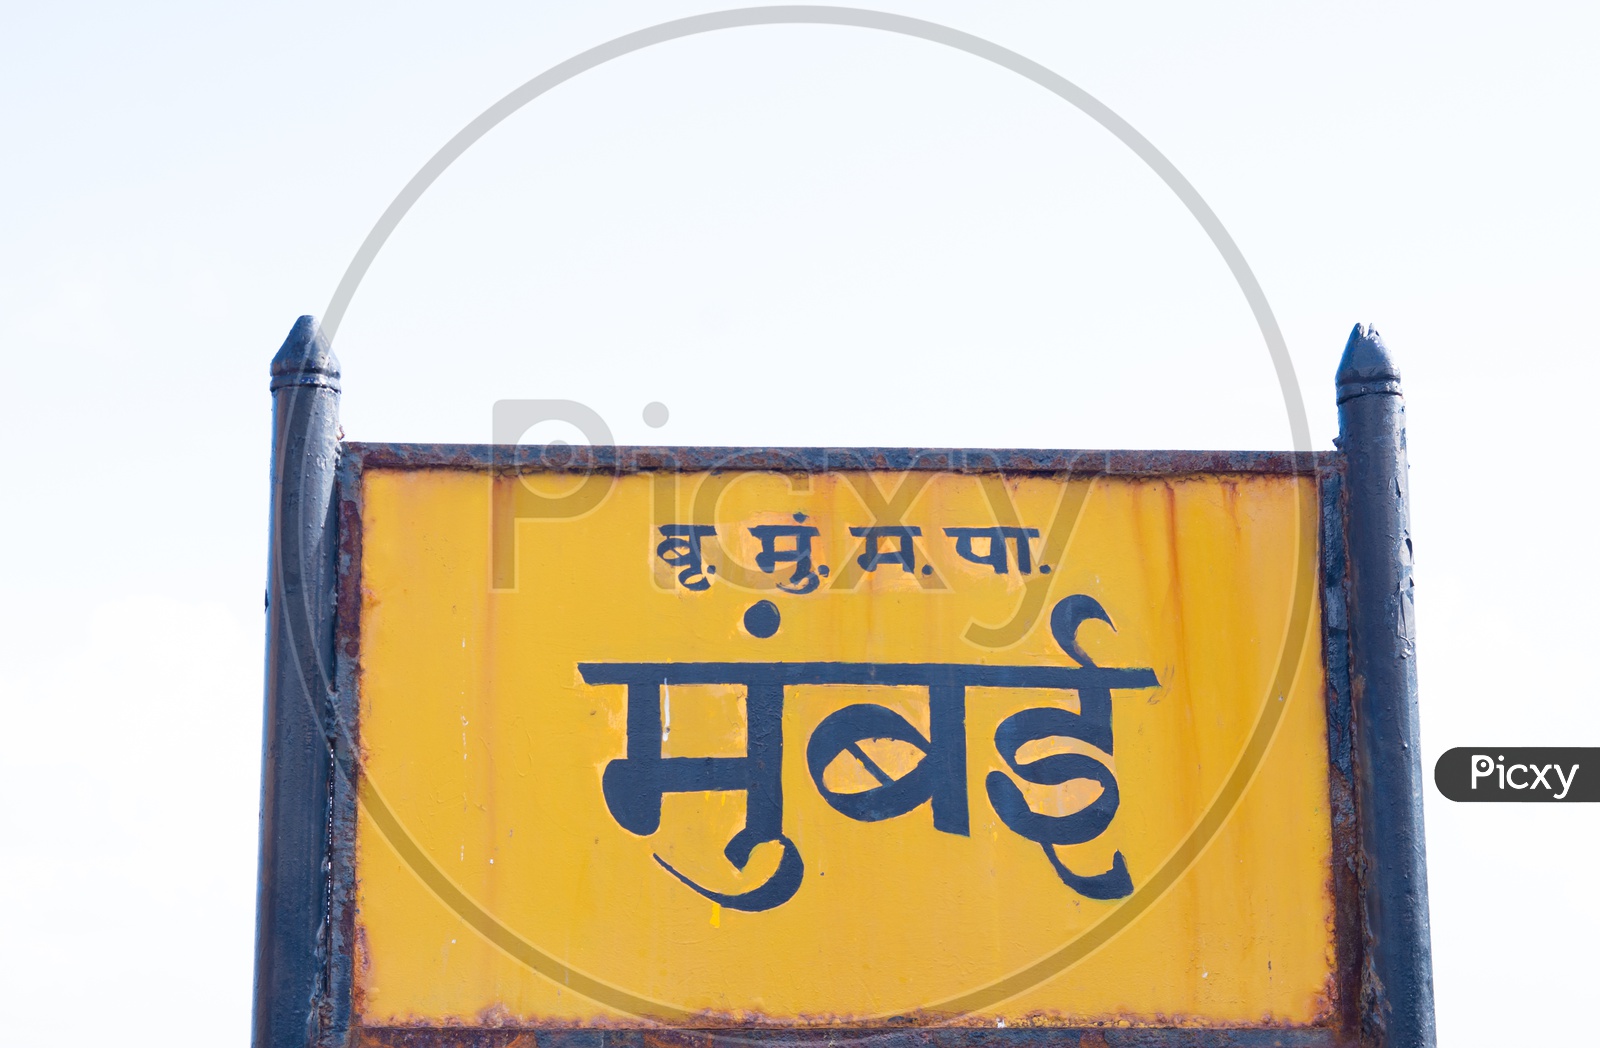 Bombay old name "Mumbai" signboard near Gateway of India.